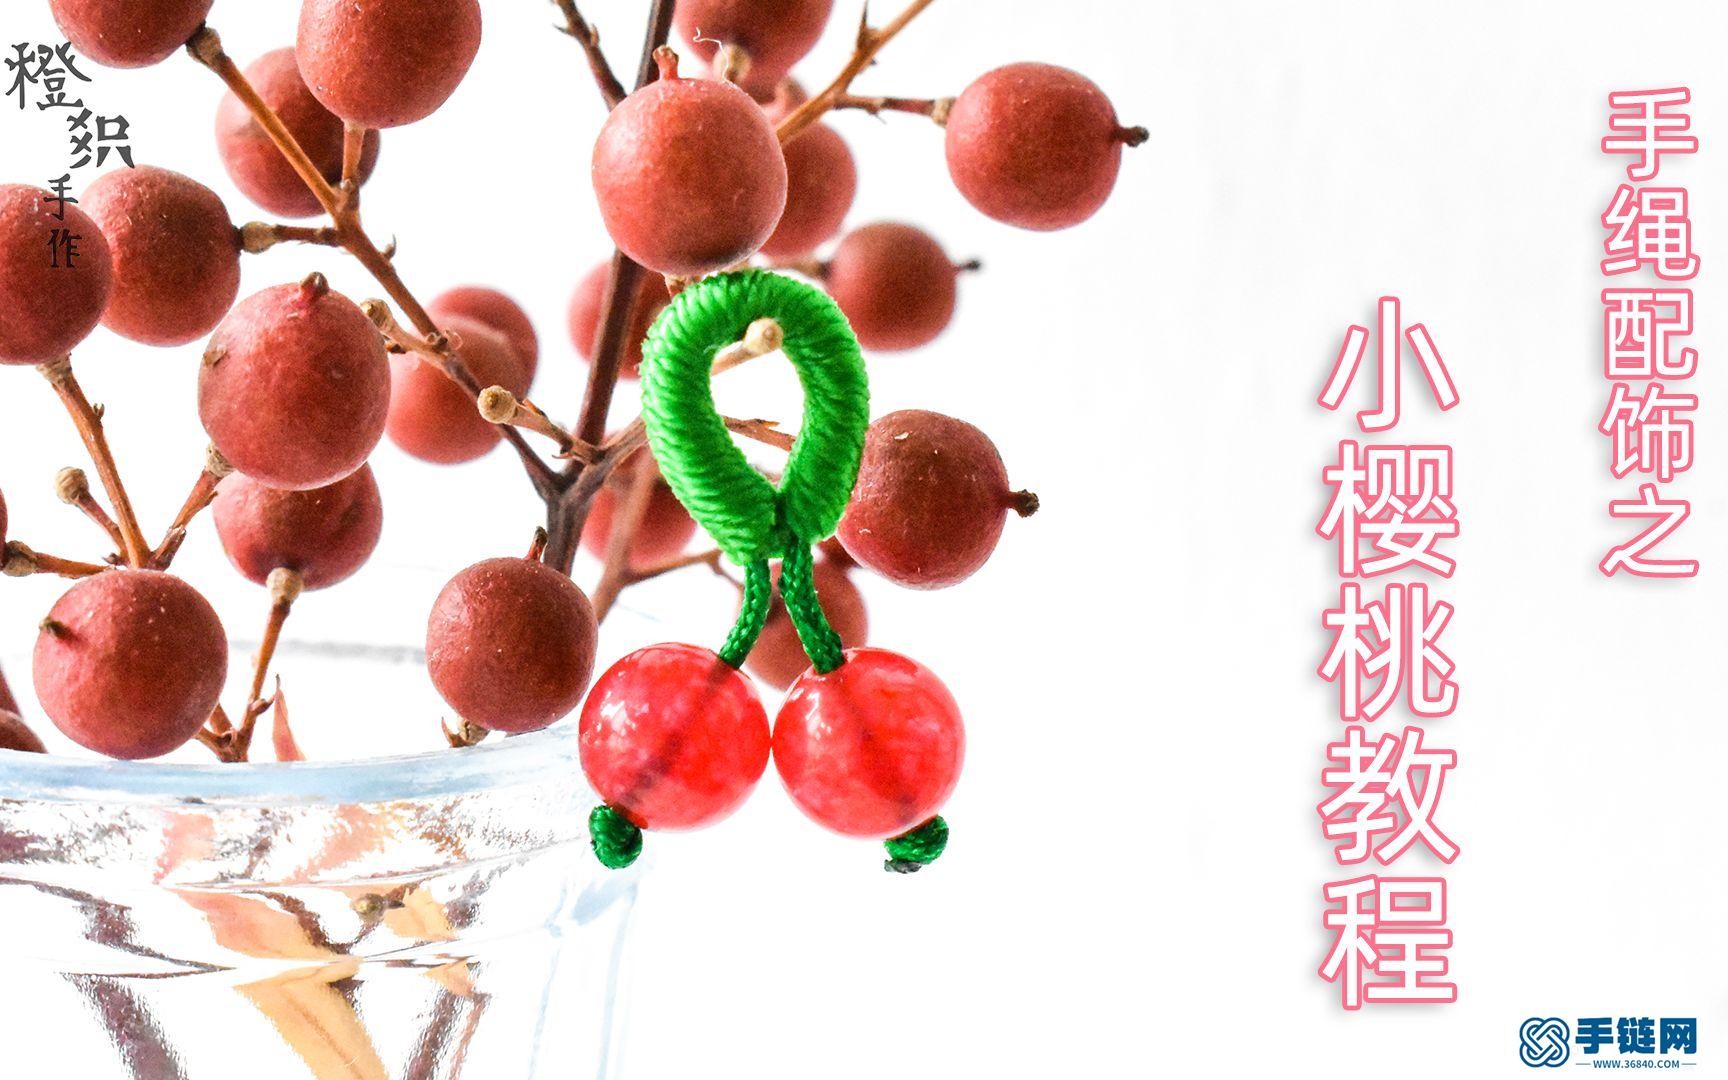 小樱桃--编绳配饰教程～快来编织一个简单可爱甜美的小樱桃点缀春天～。～